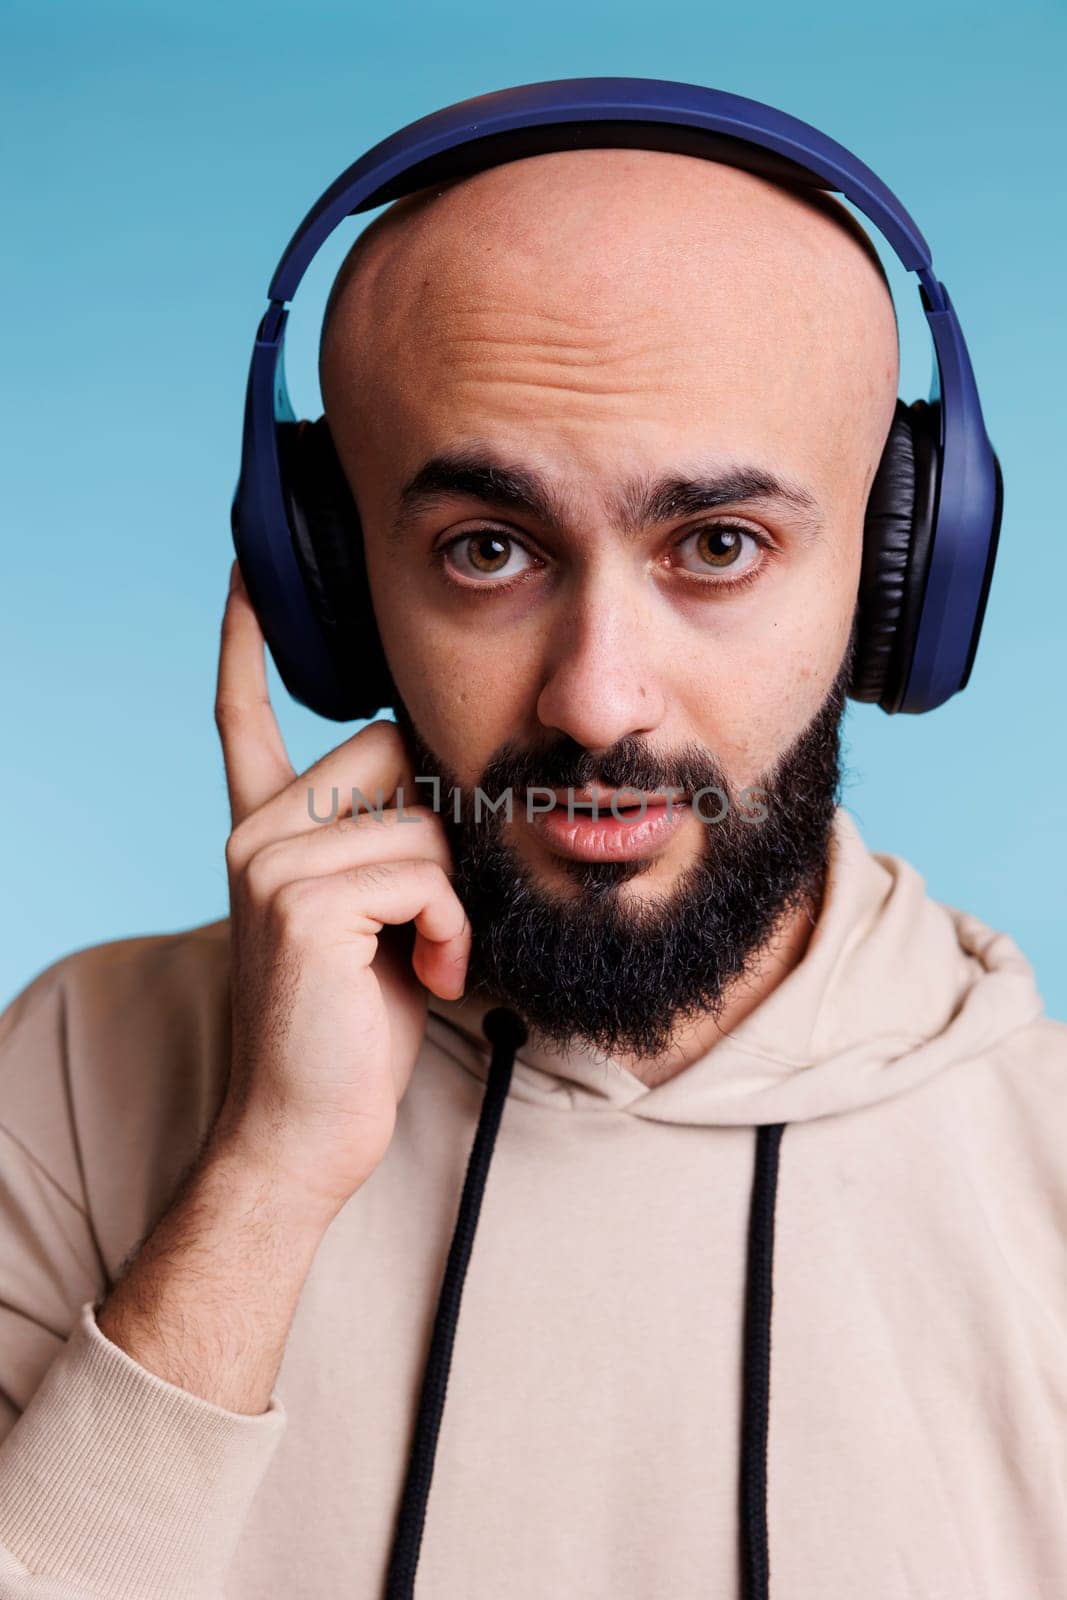 Arab man in wireless headphones portrait by DCStudio